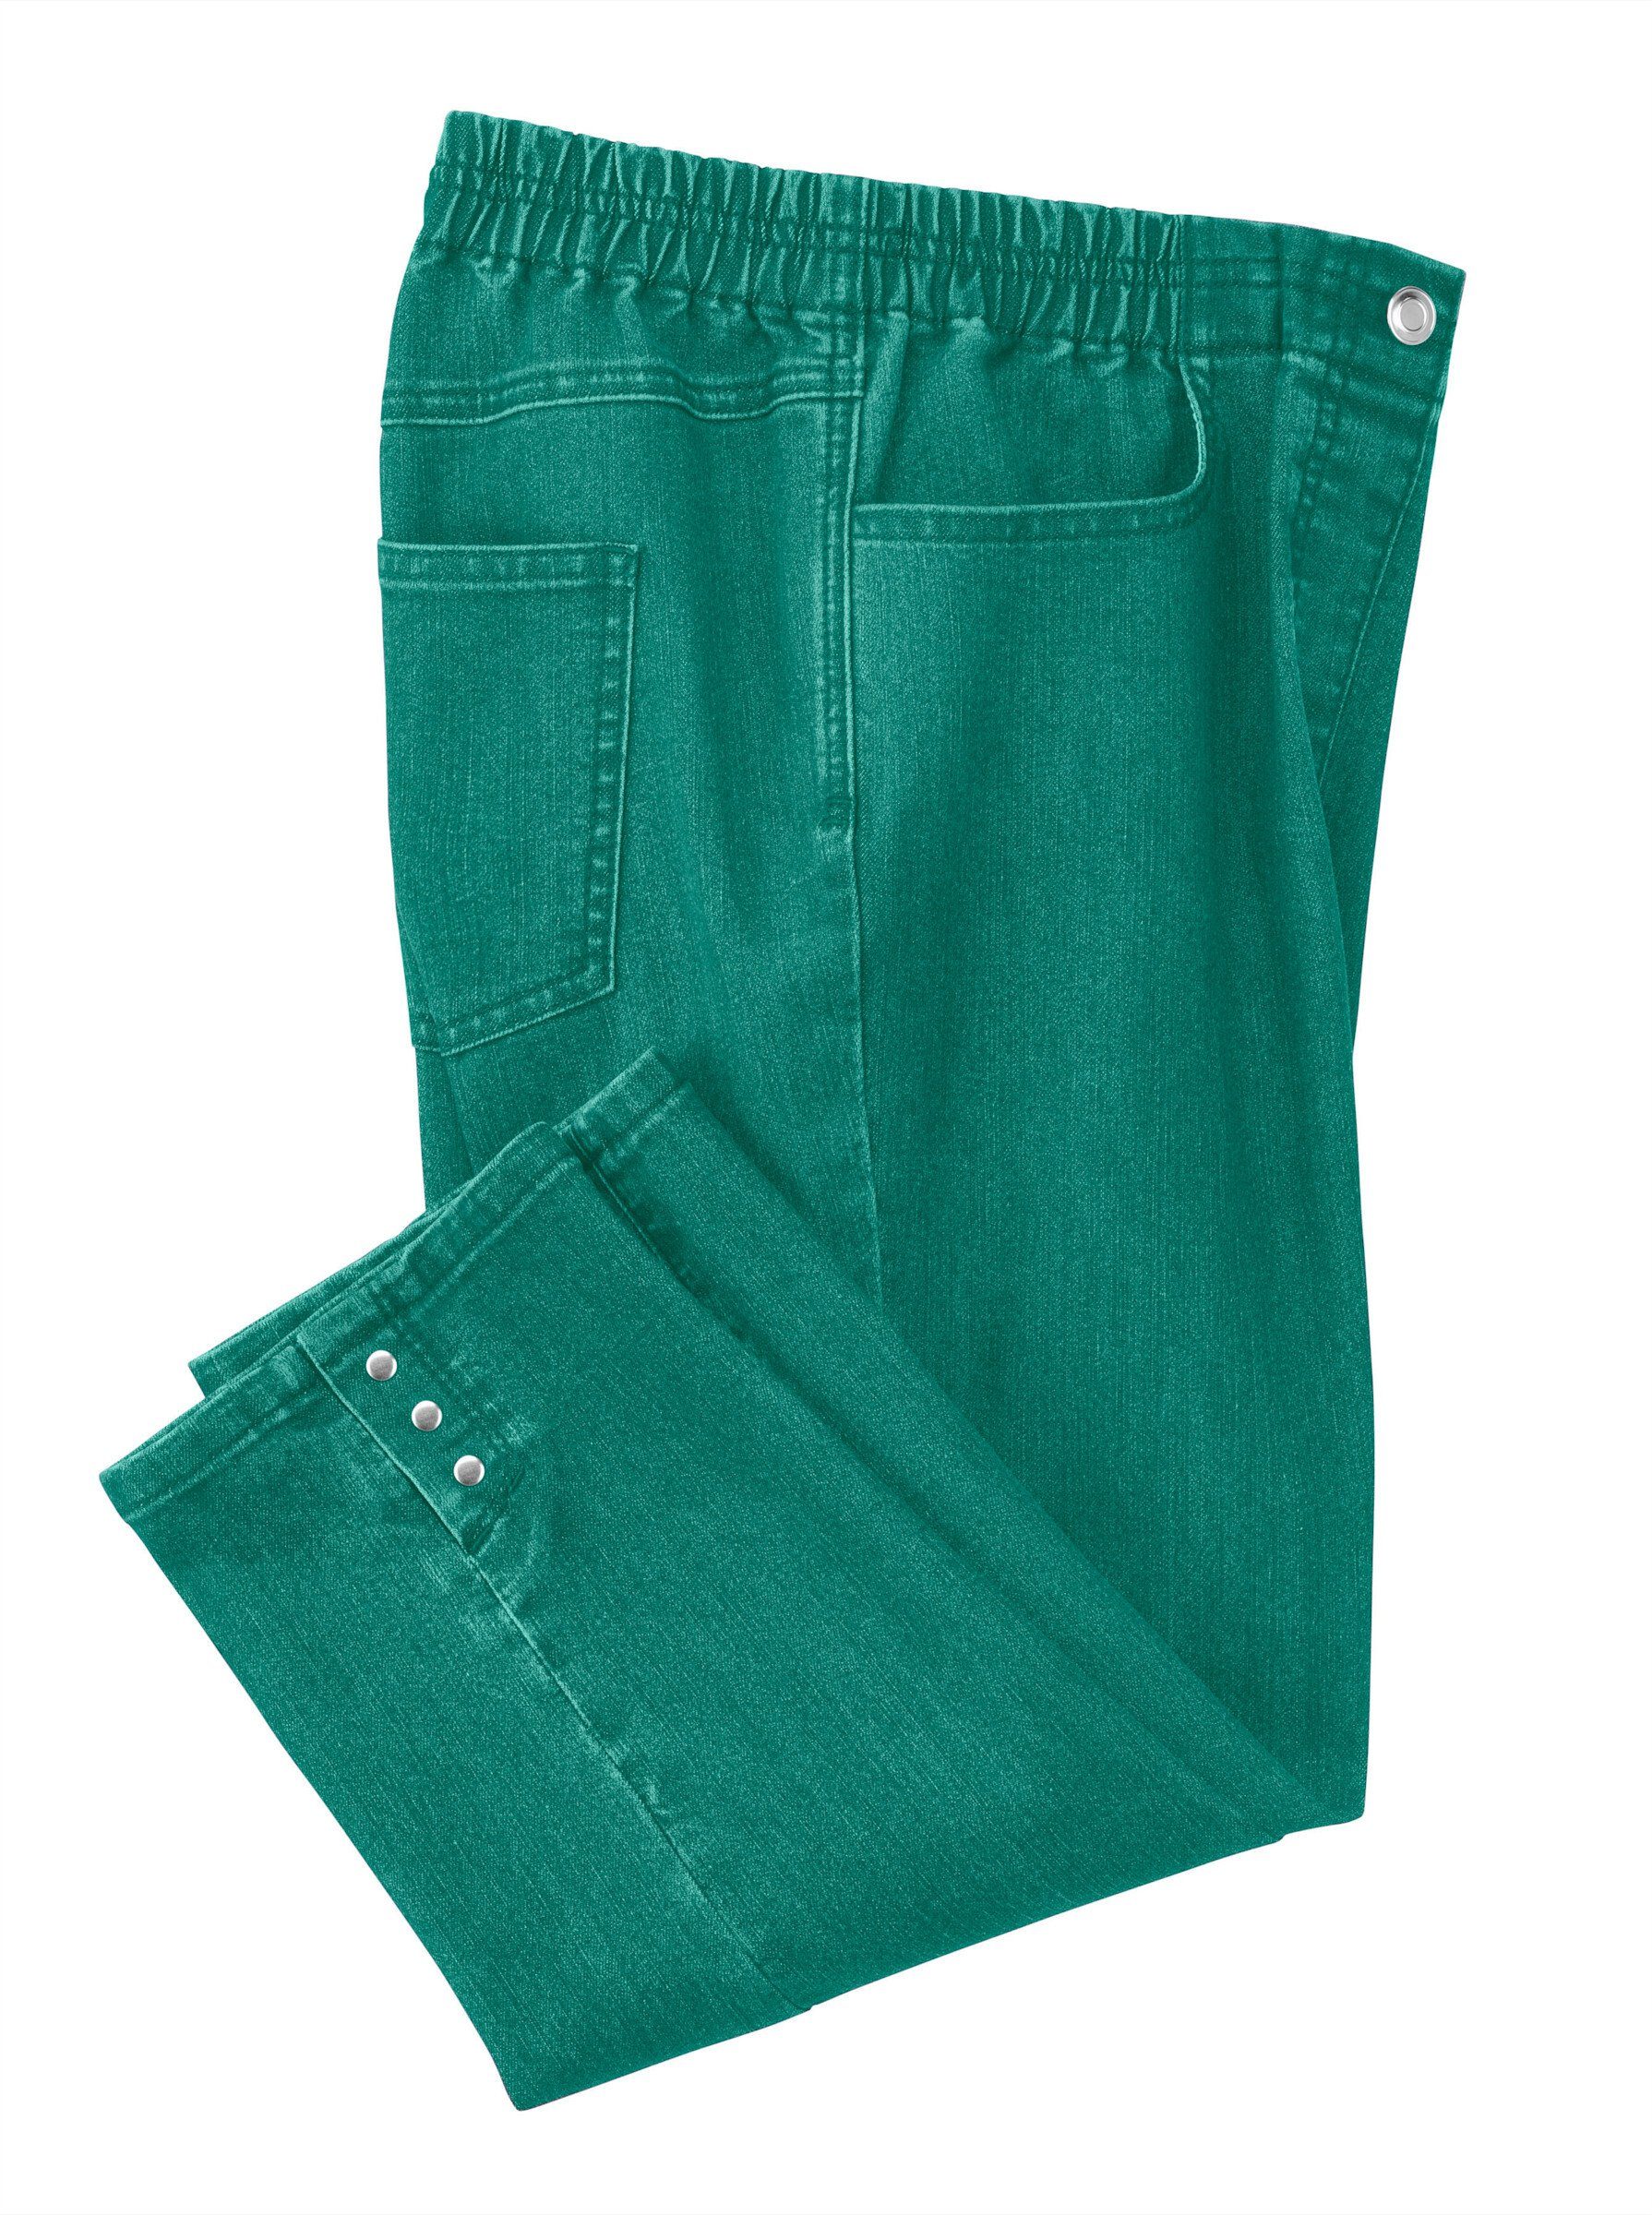 WEIDEN Jeansshorts smaragd WITT